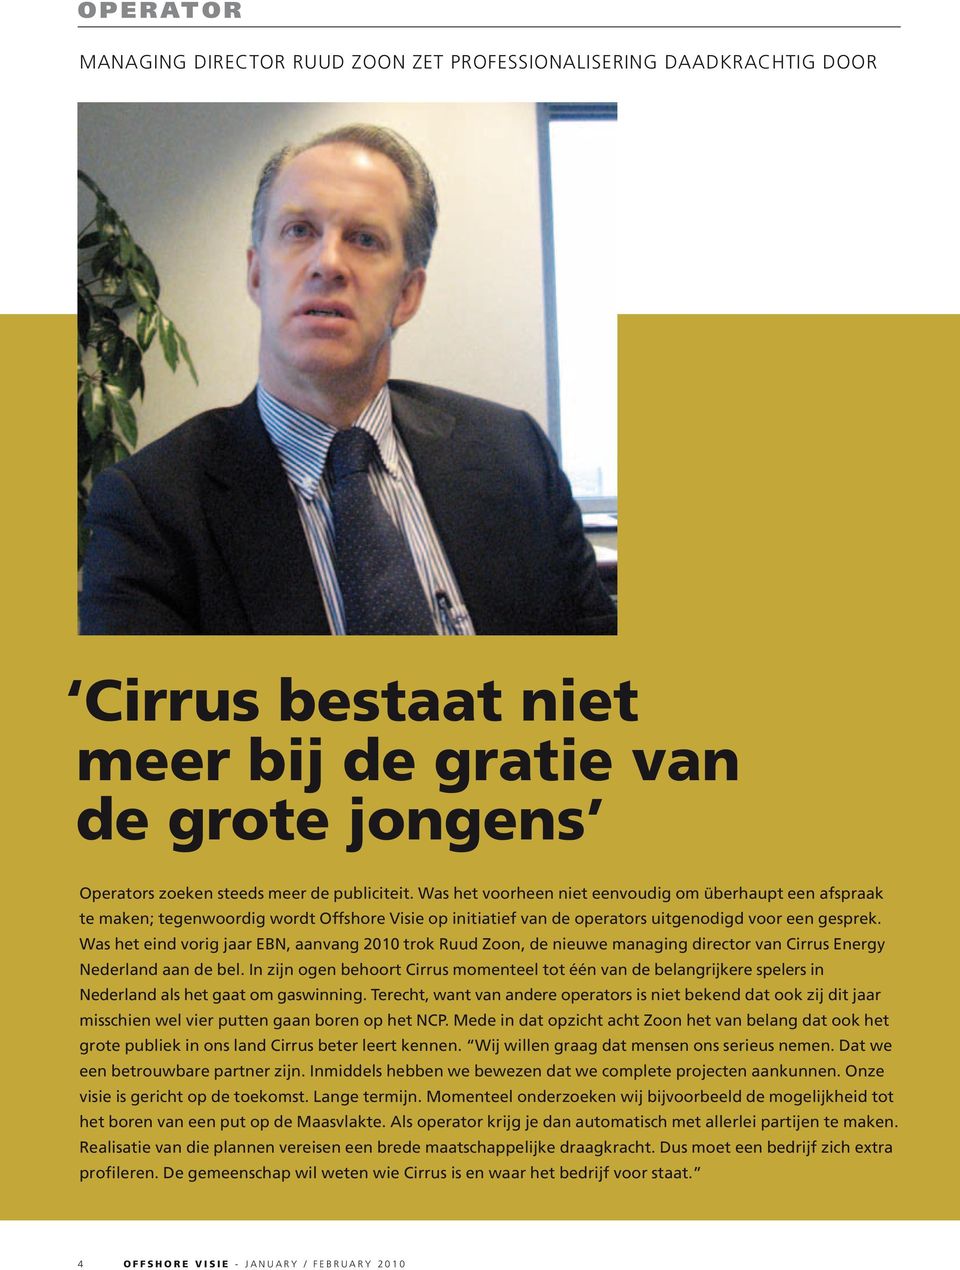 Was het eind vorig jaar EBN, aanvang 2010 trok Ruud Zoon, de nieuwe managing director van Cirrus Energy Nederland aan de bel.